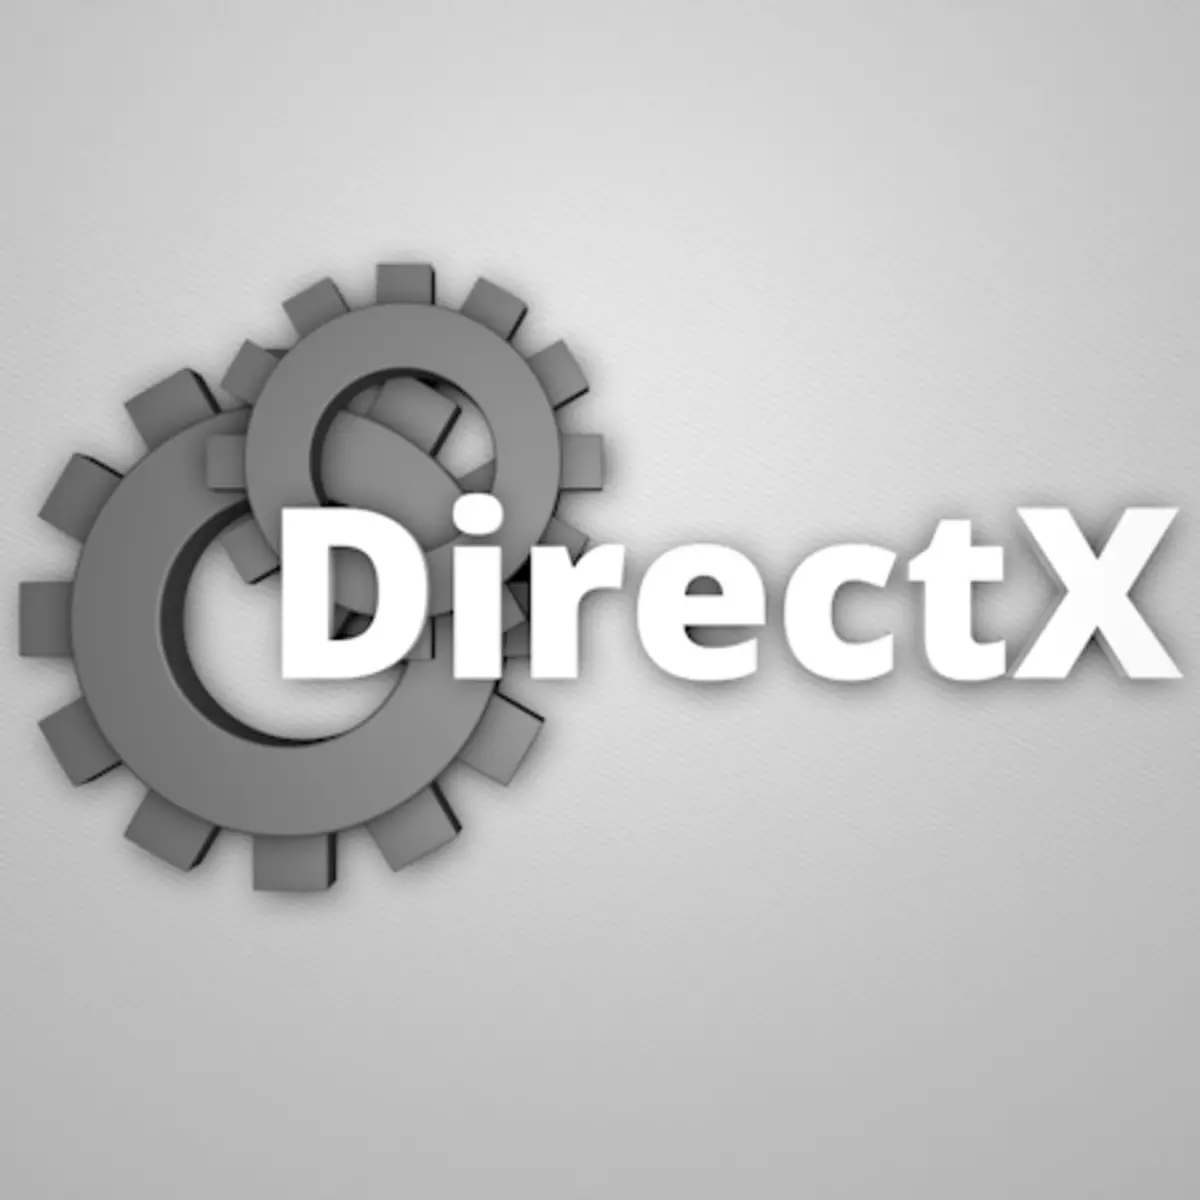 រៀបចំ DirectX សម្រាប់ការសម្តែង